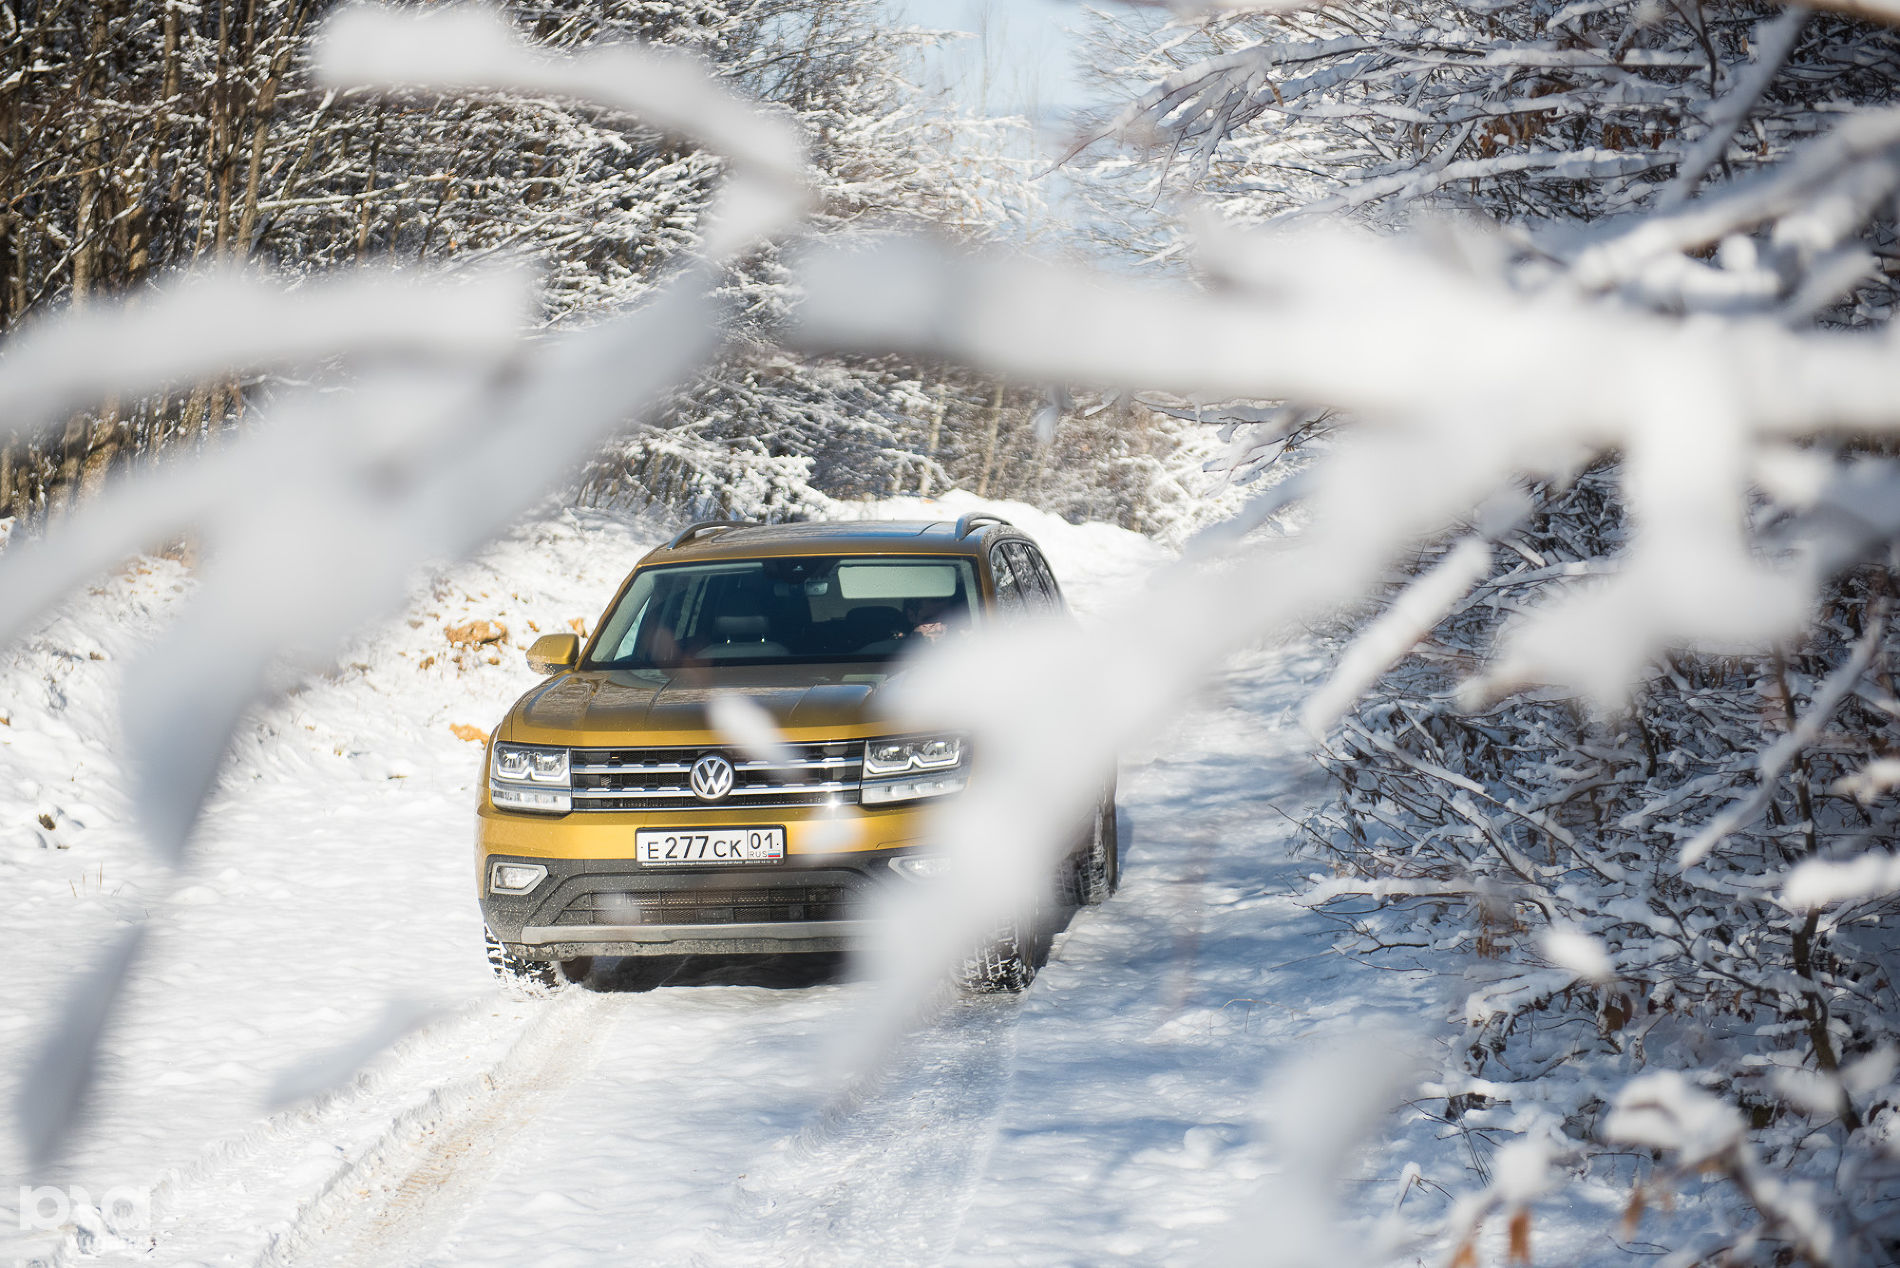 За снегом на Volkswagen Teramont © Фото Елены Синеок, Юга.ру